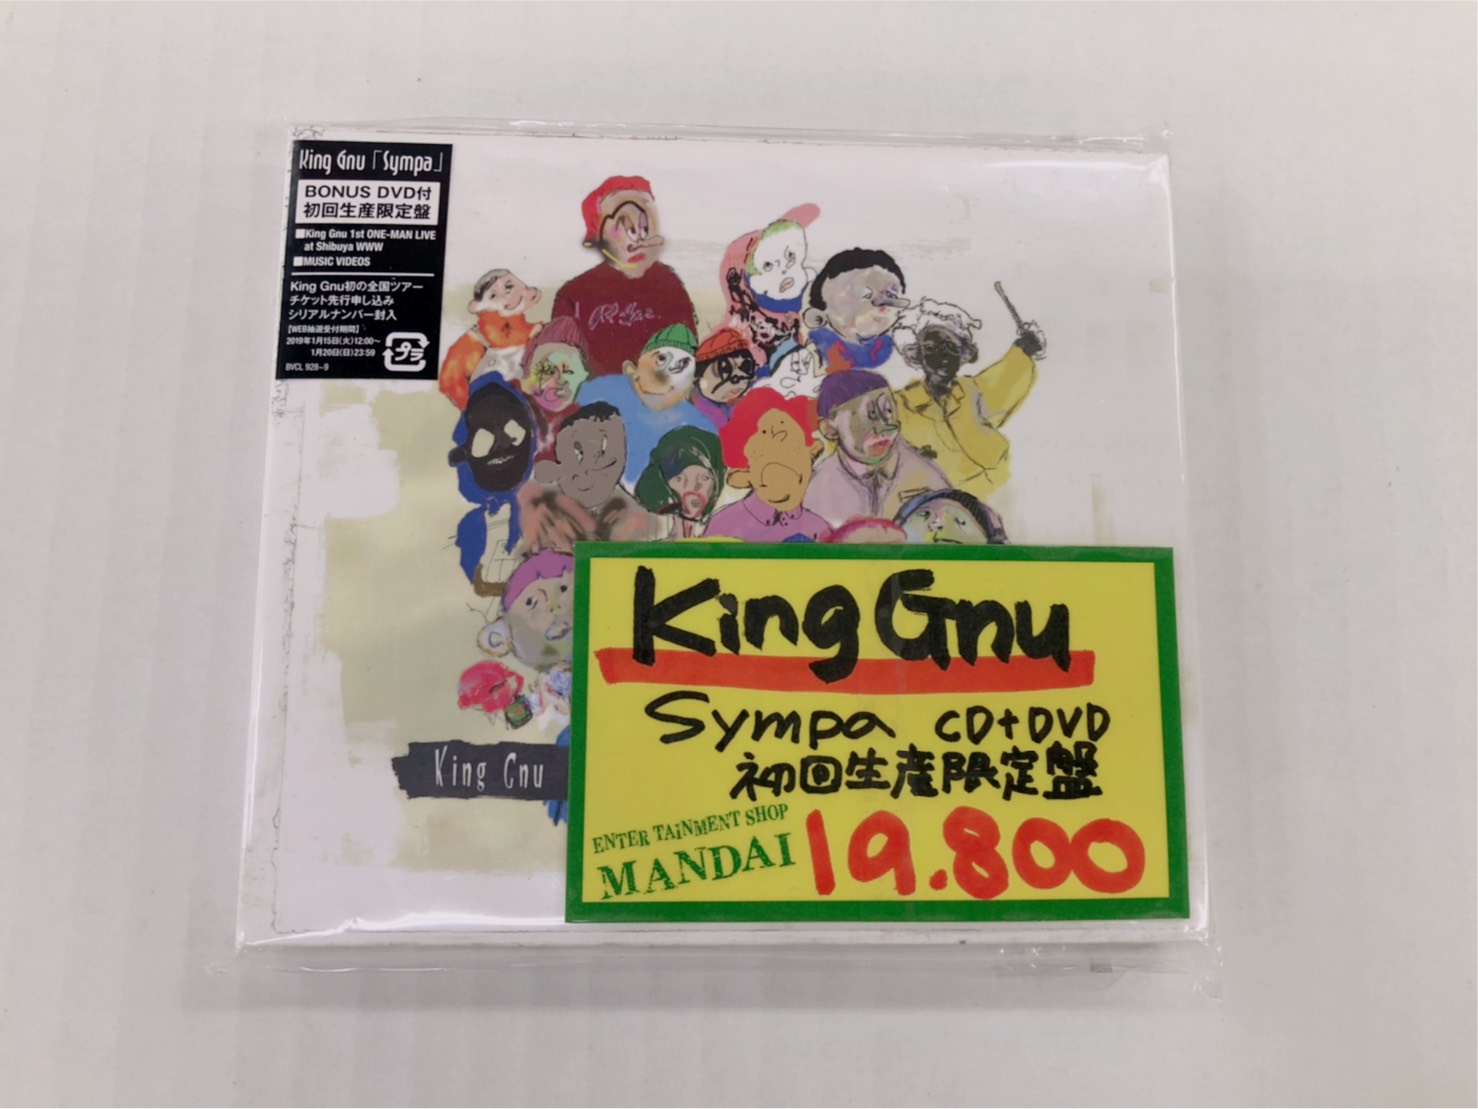 9450円 公式サイト Sympa 初回限定盤